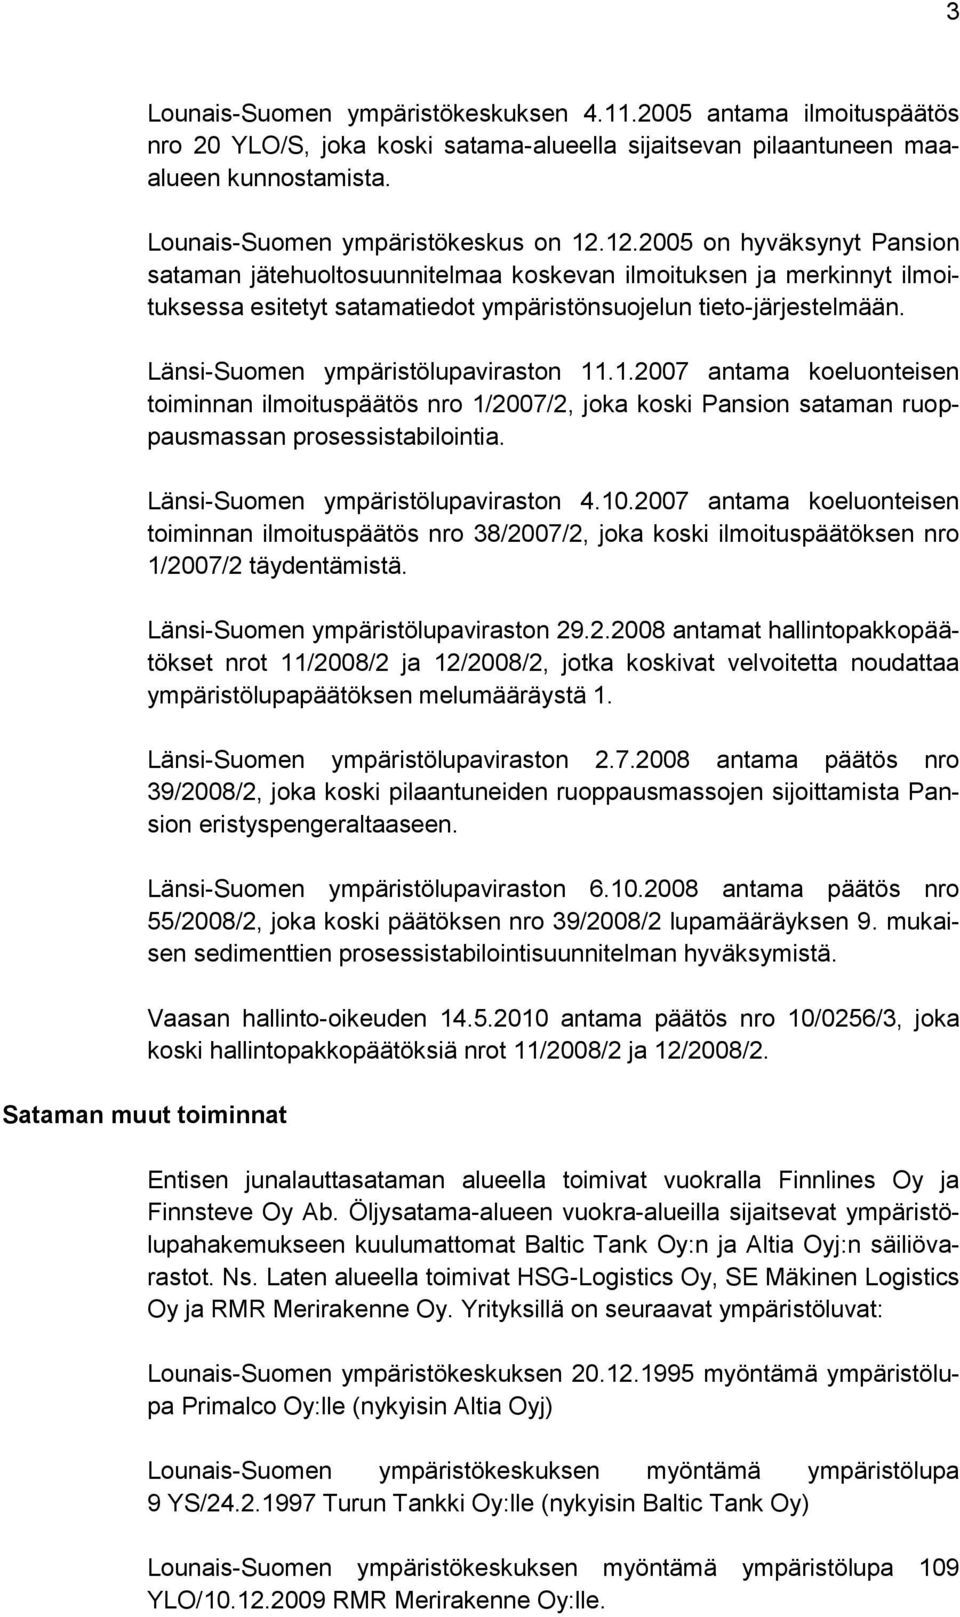 Länsi-Suomen ympäristölupaviraston 11.1.2007 antama koeluonteisen toiminnan ilmoituspäätös nro 1/2007/2, joka koski Pansion sataman ruoppausmassan prosessistabilointia.